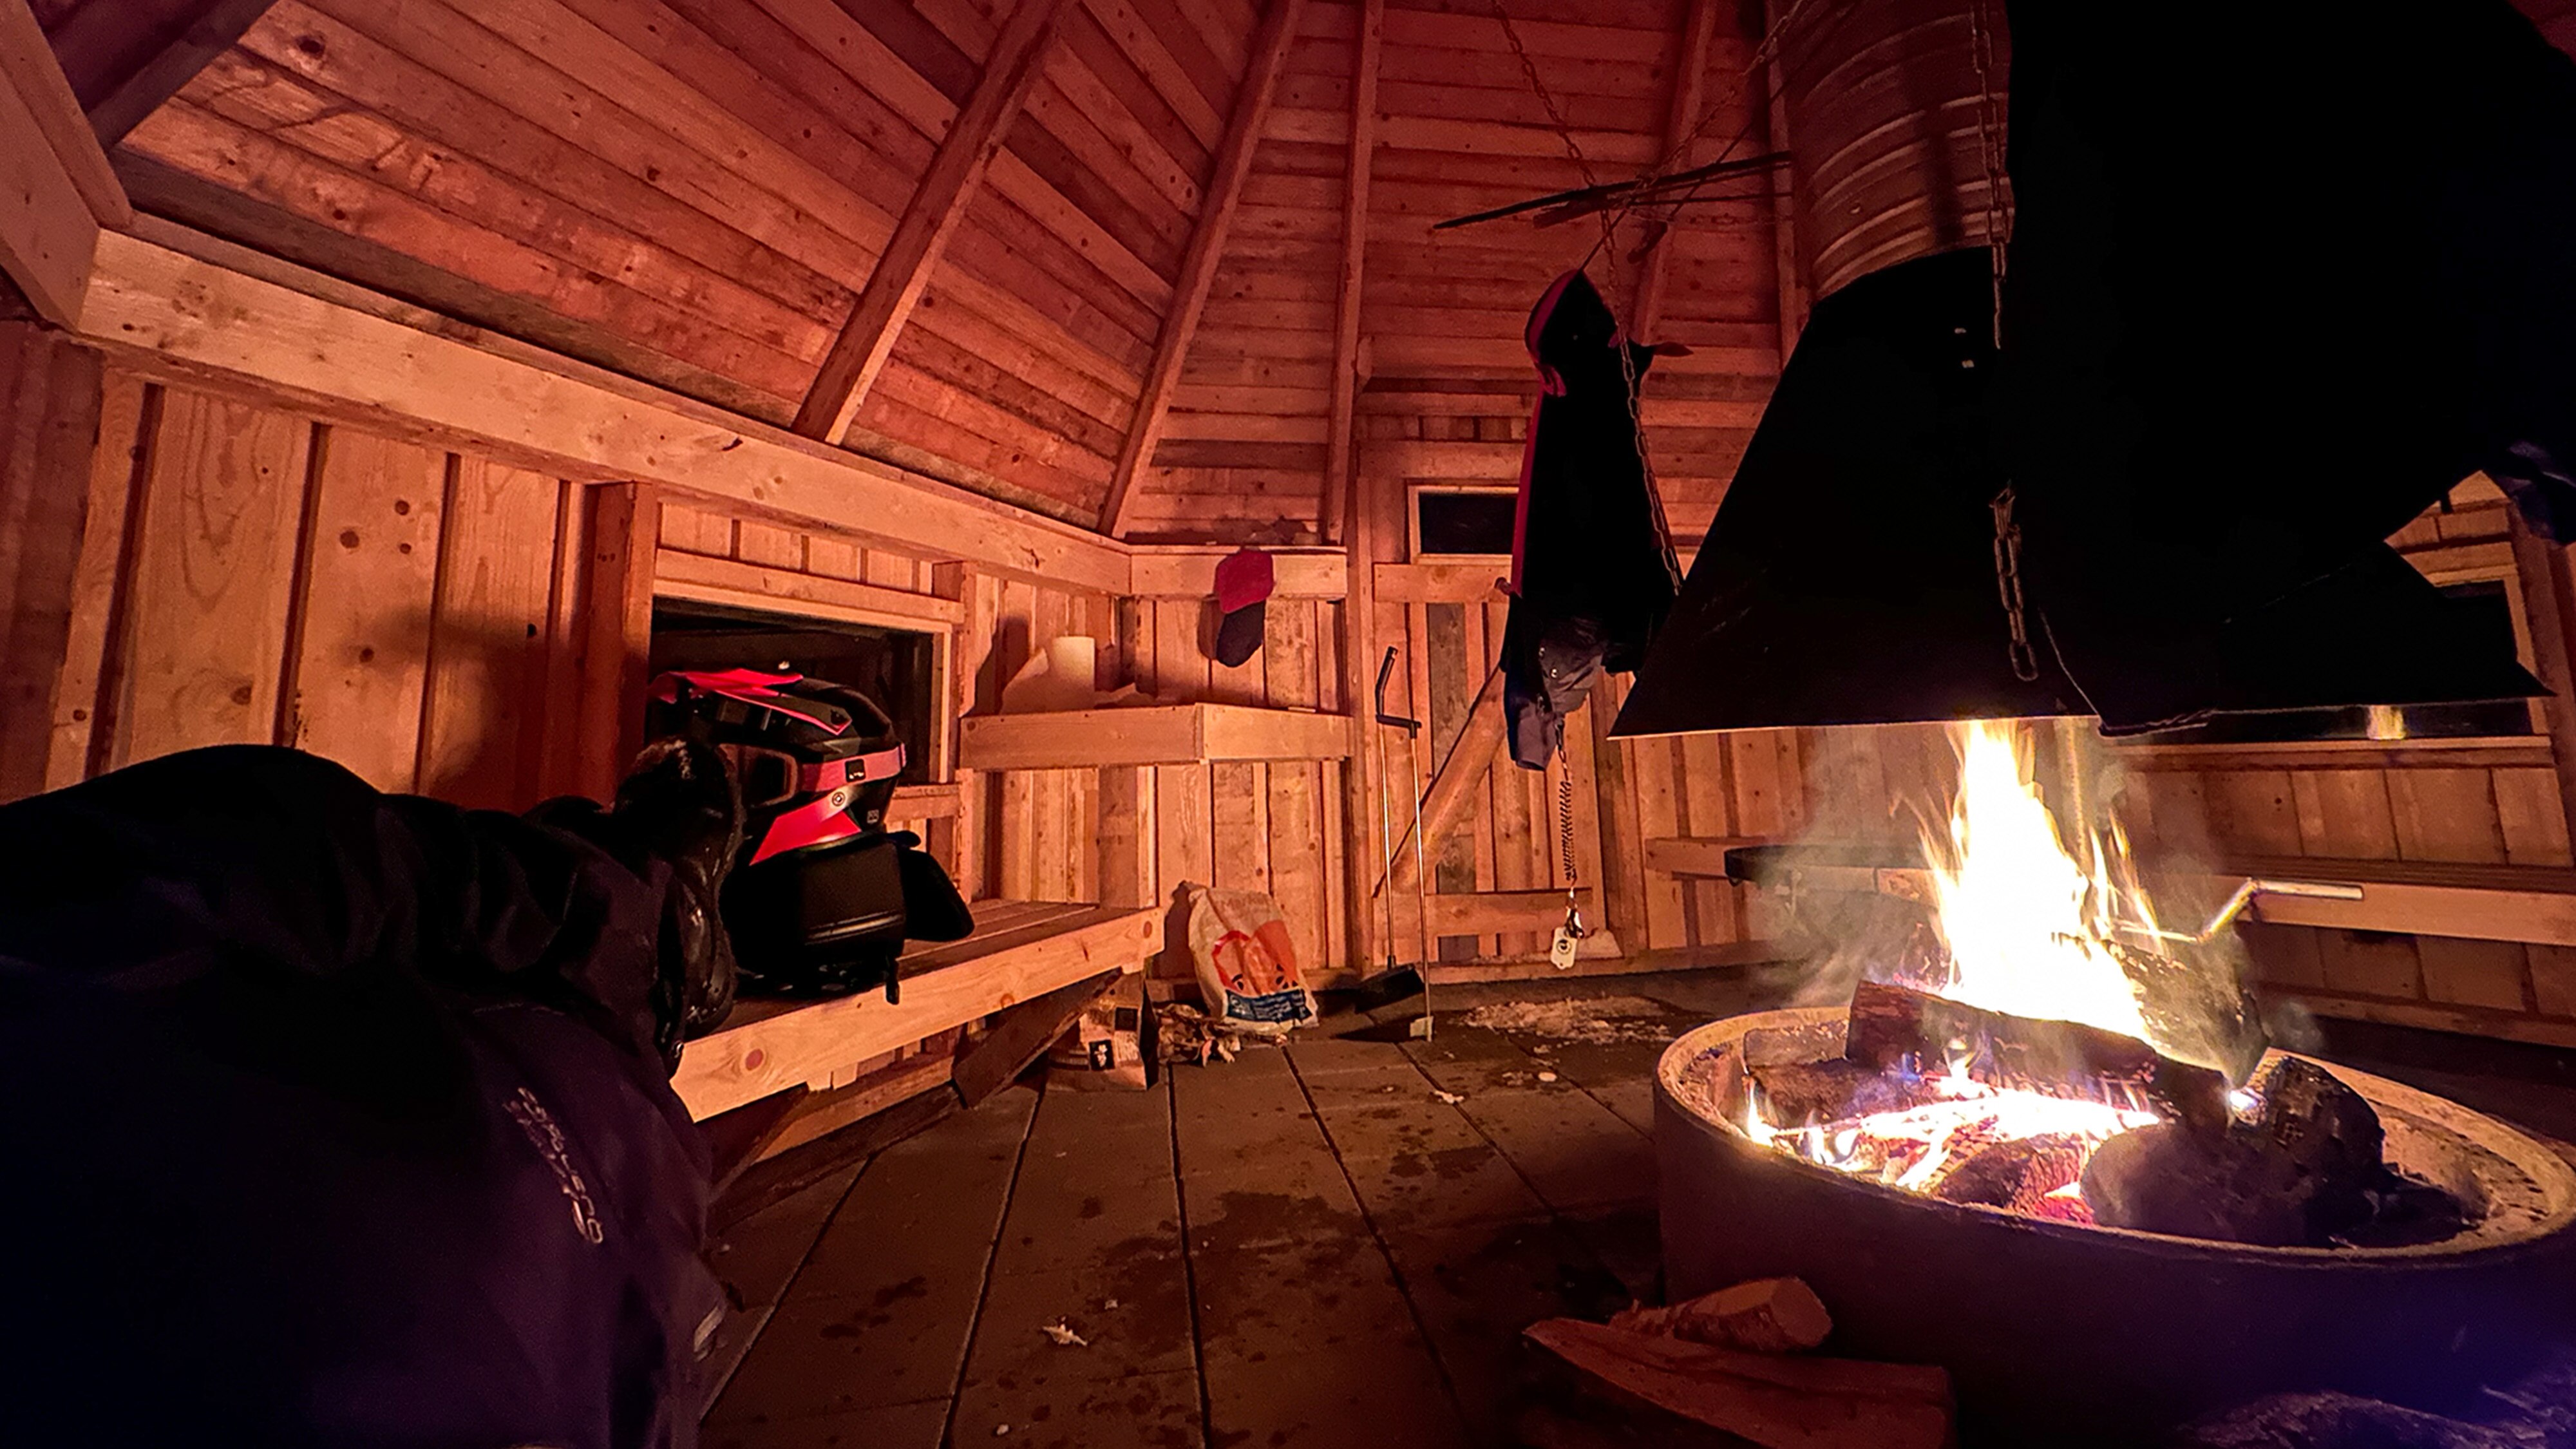 Joni Maununen couché dans un campement avec un feu de camp